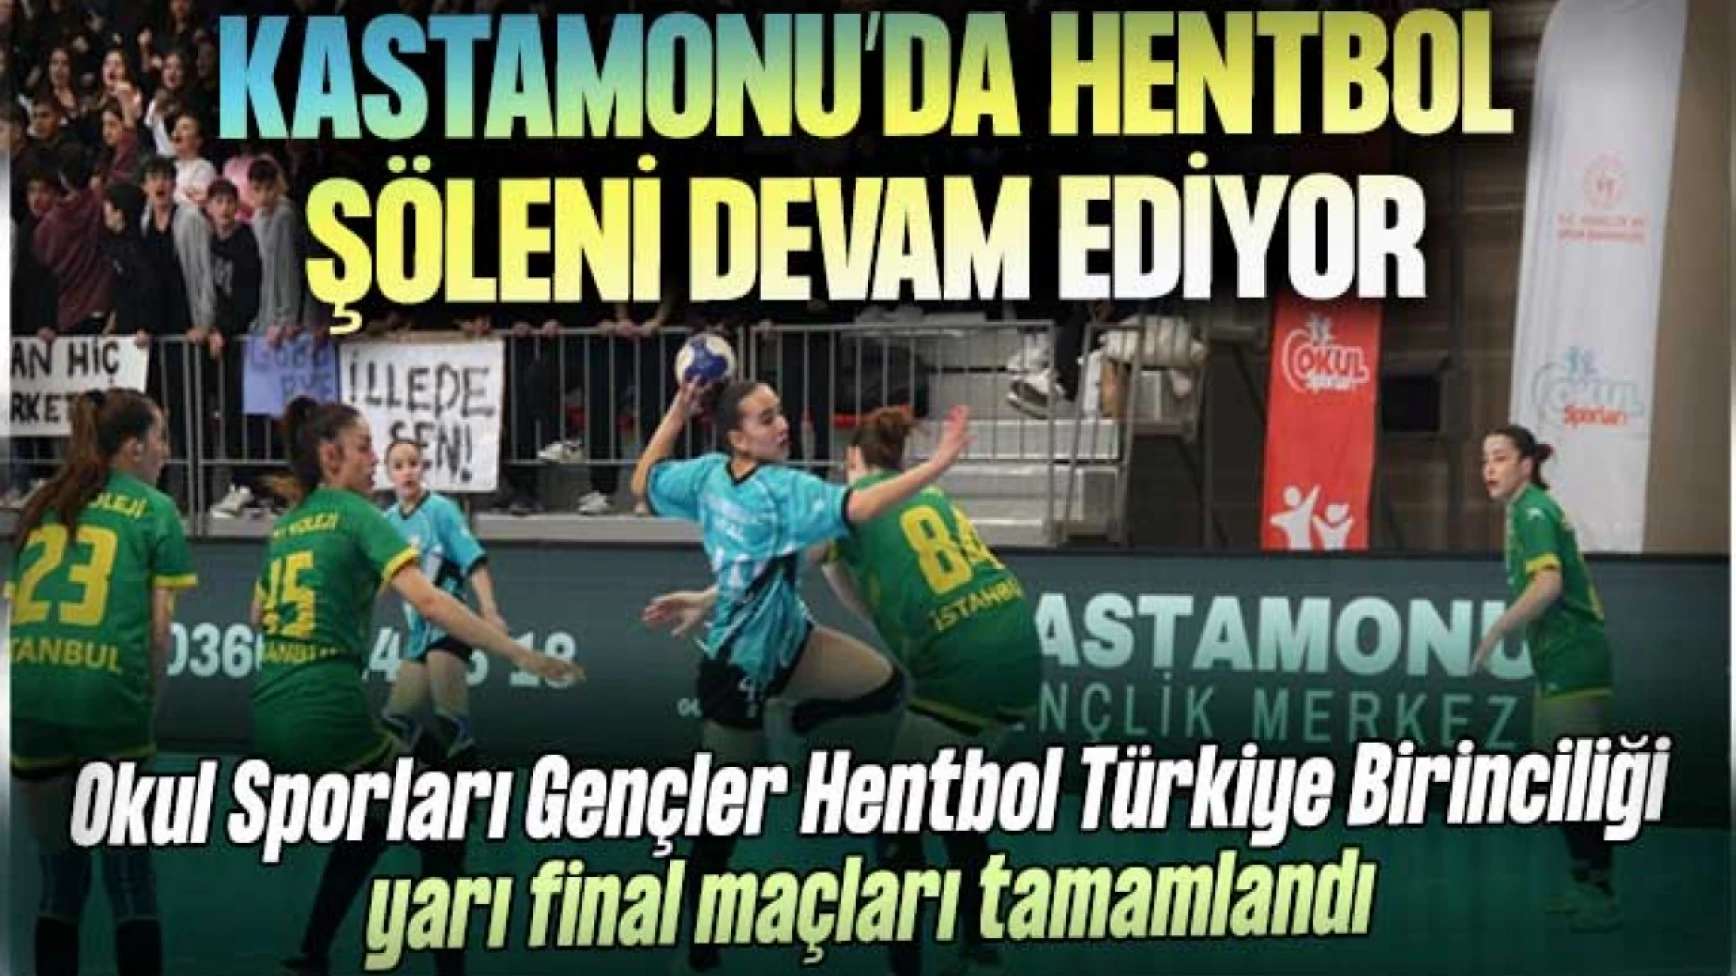 Okul Sporları Gençler Hentbol Türkiye Birinciliği Yarı Final Maçları Tamamlandı!